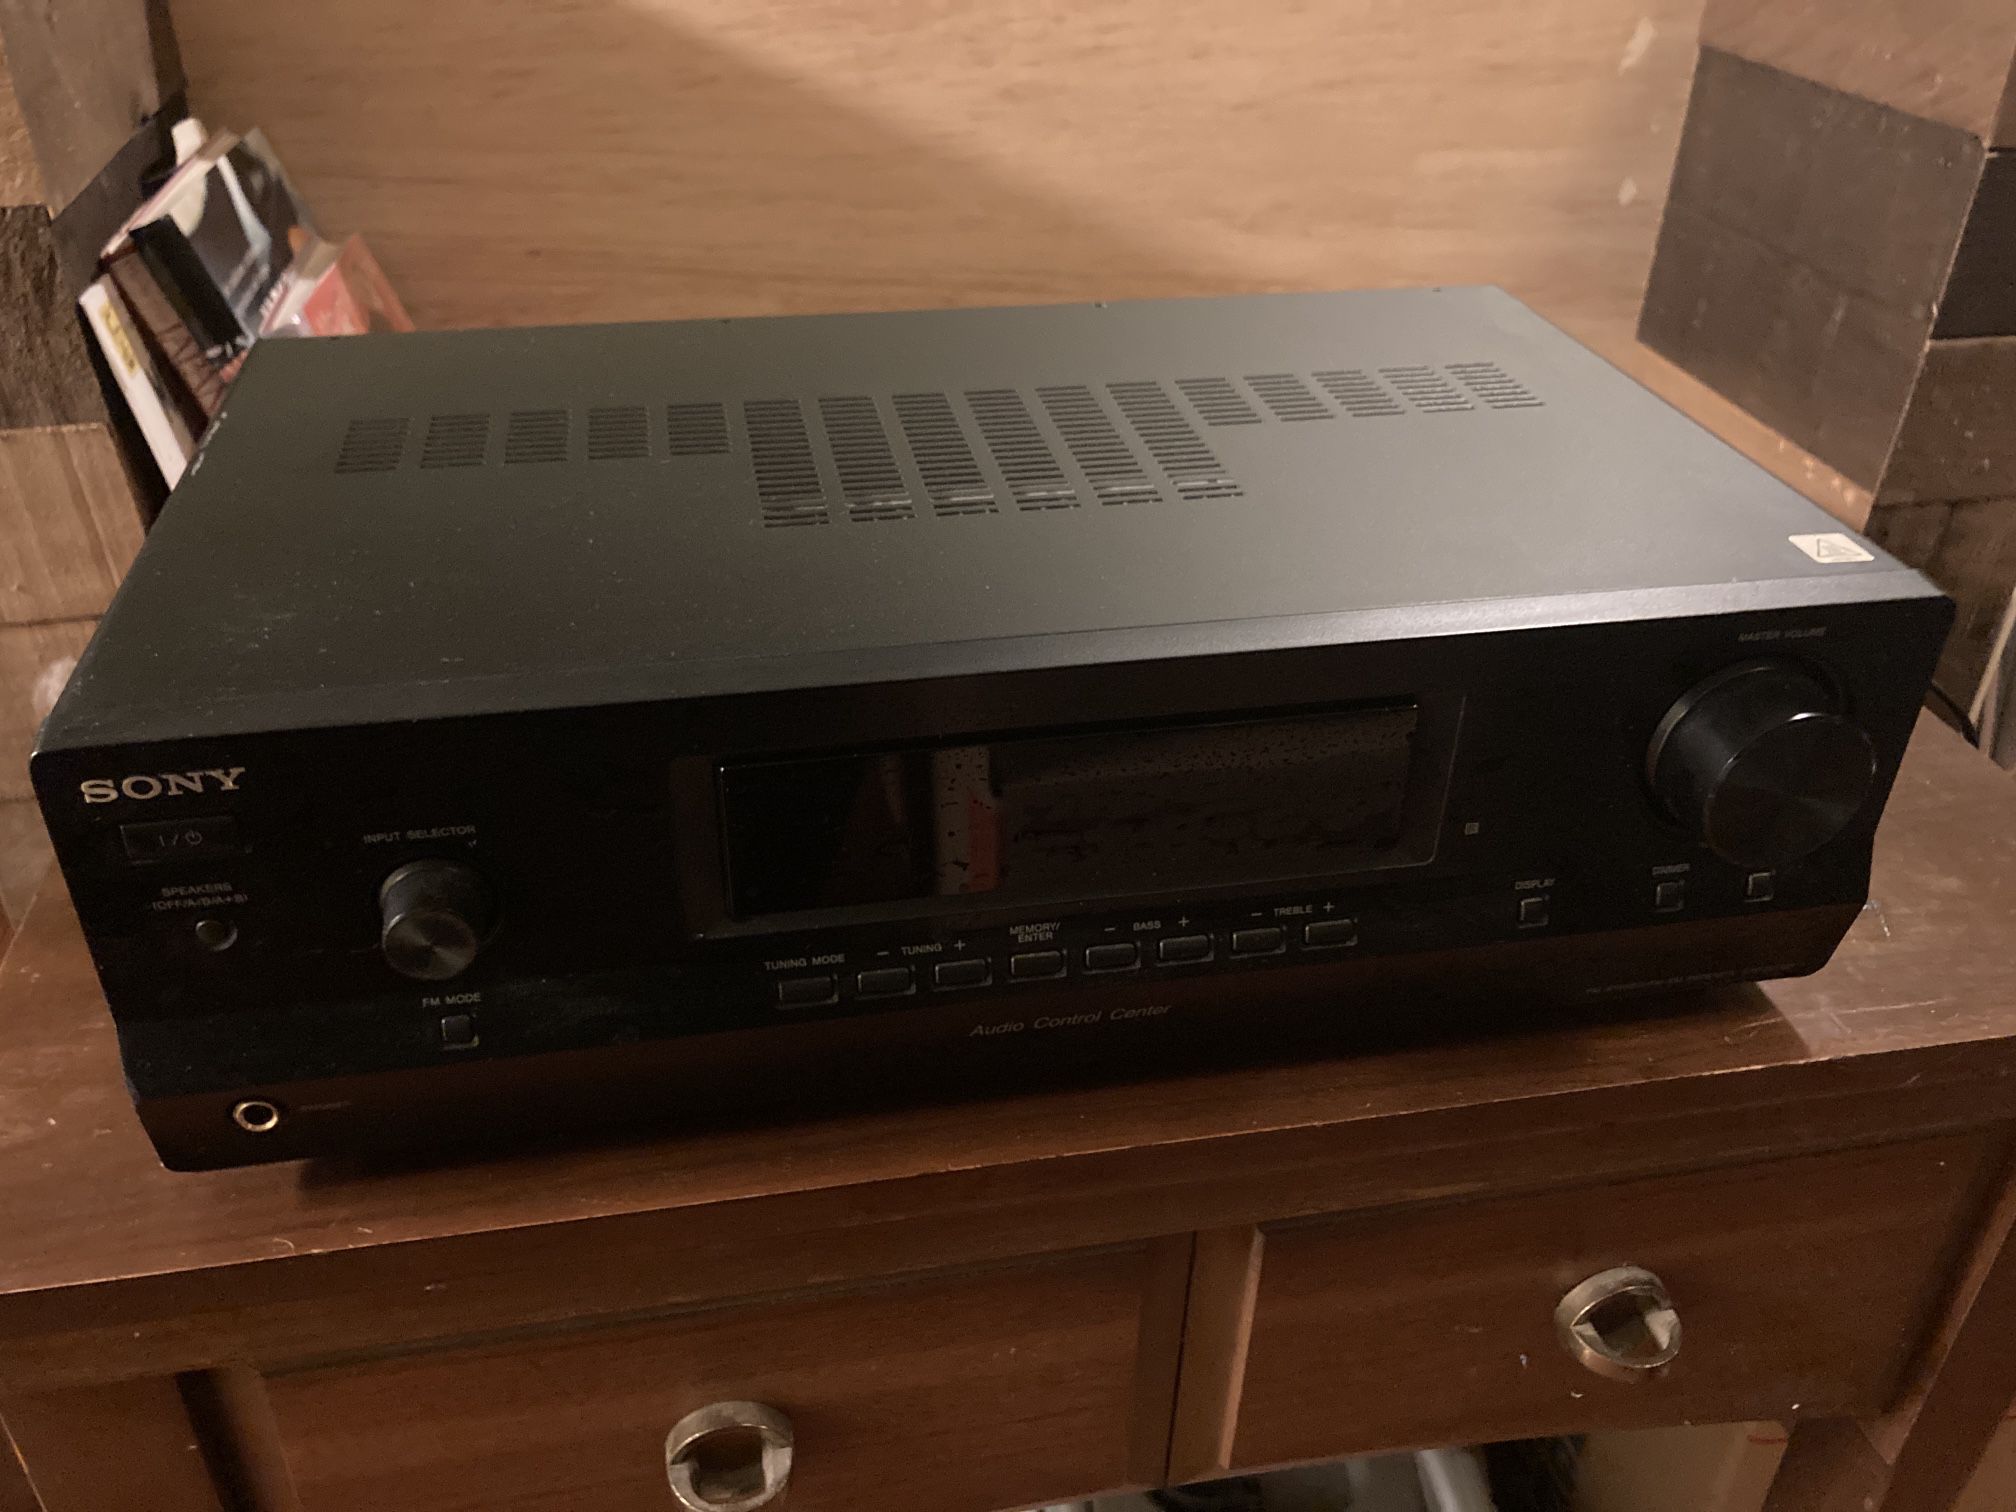 Sony STR-DH130 stereo receiver.